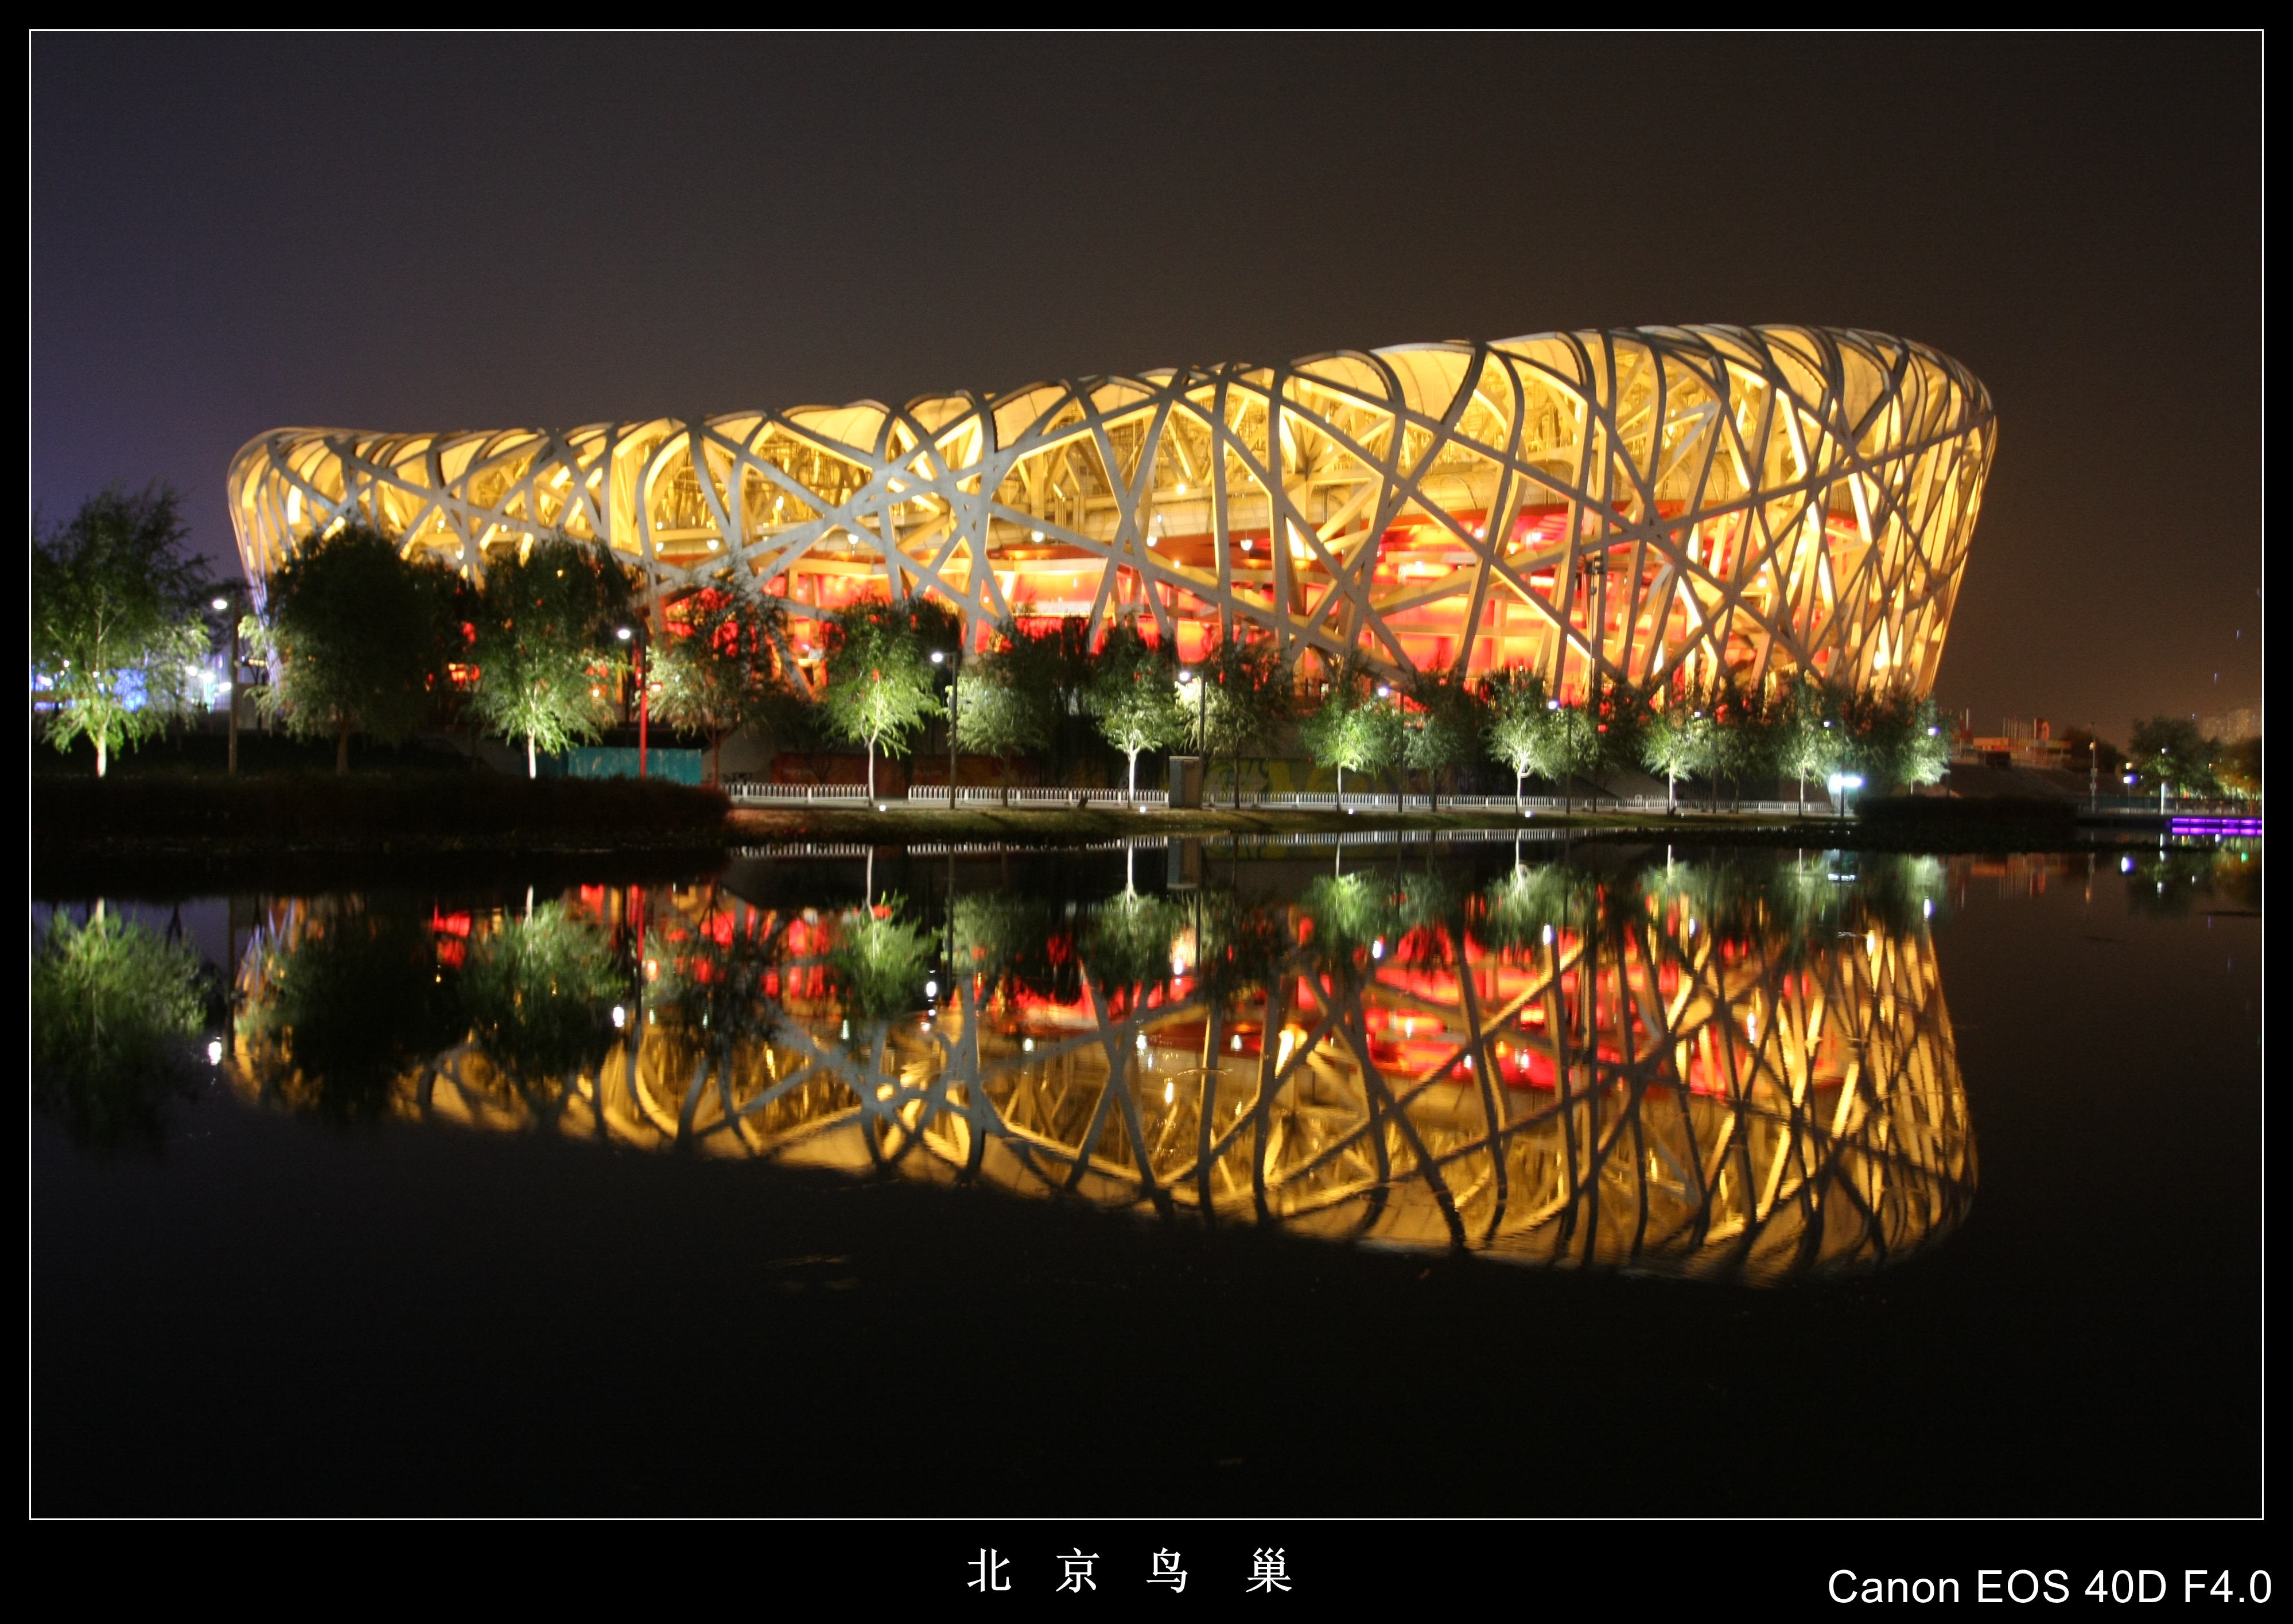 北京奥运场馆鸟巢夜景摄影图高清摄影大图-千库网